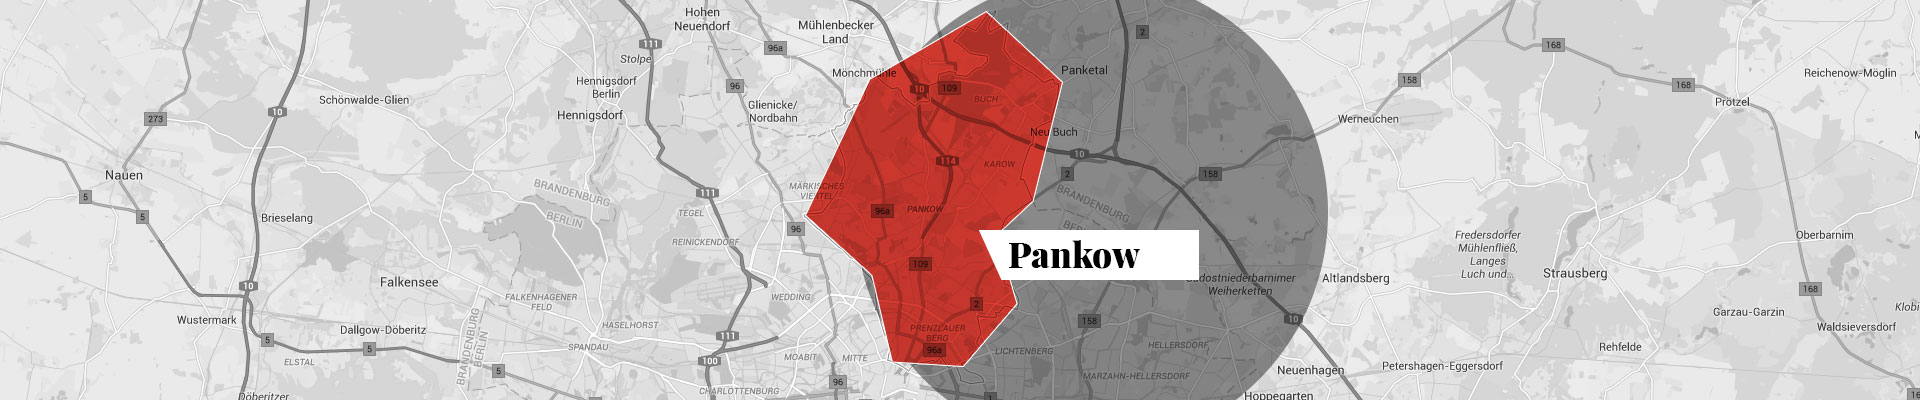 Pankow map